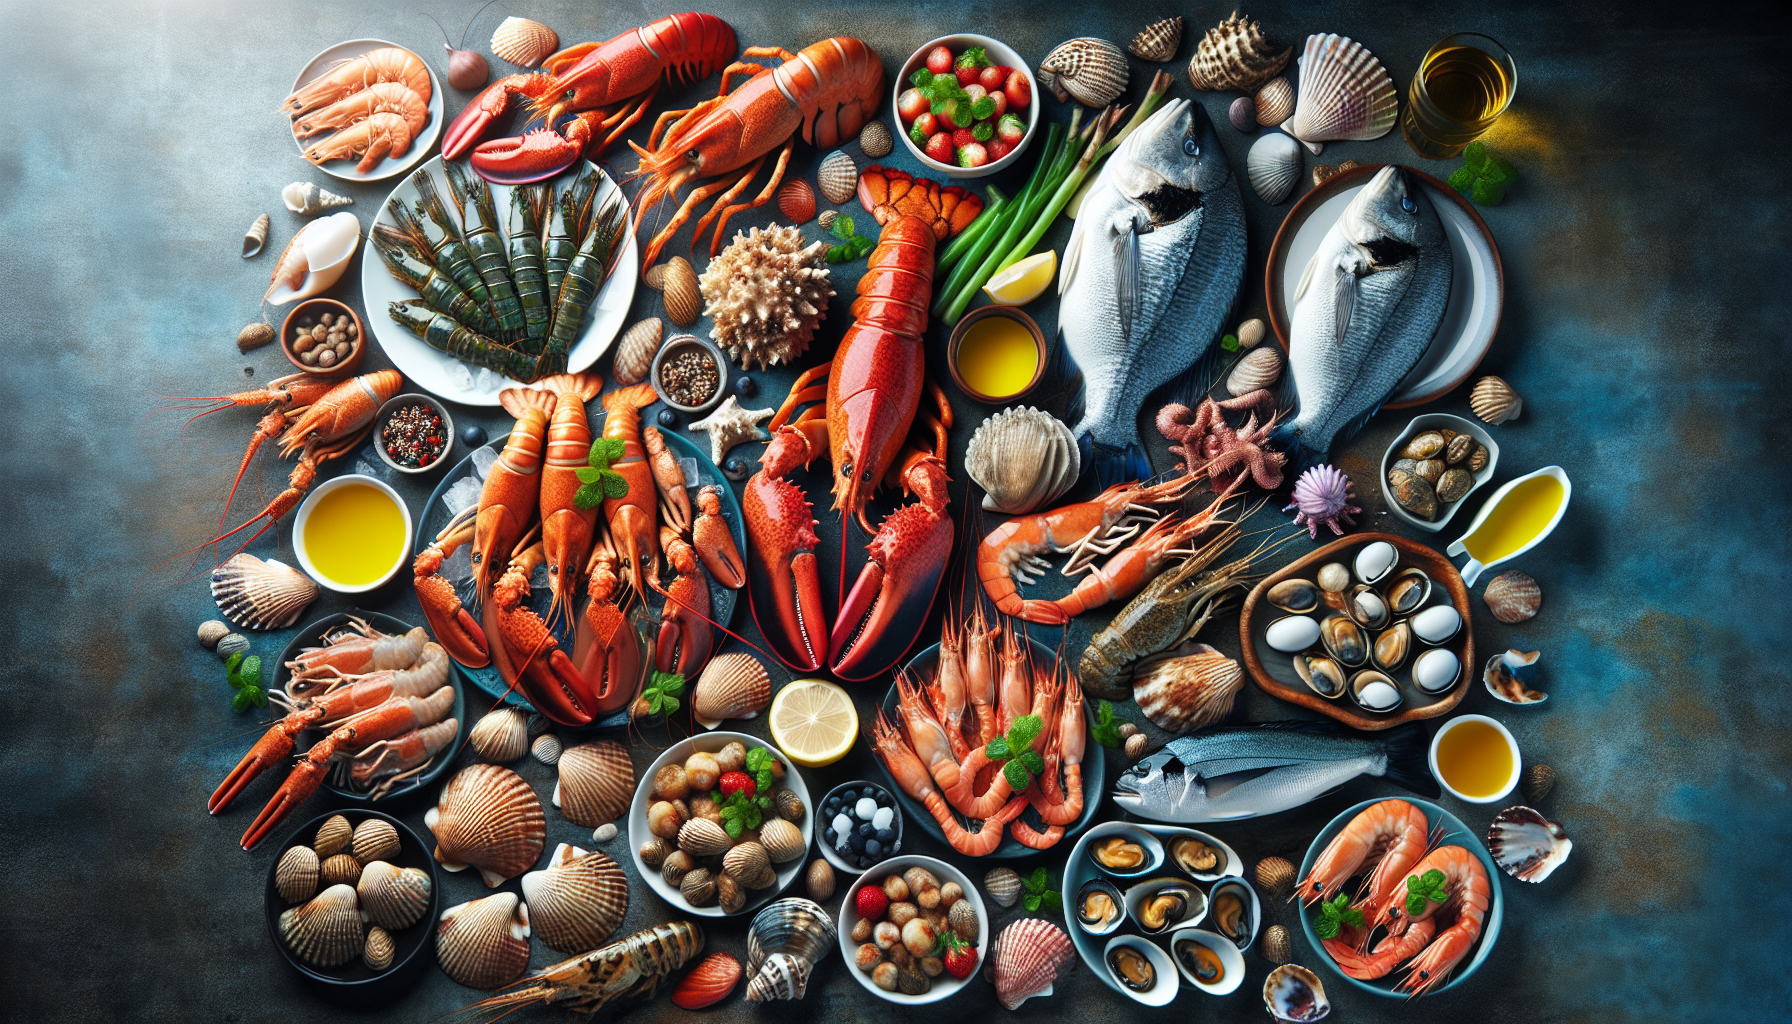 Hải sản luôn là nguồn thực phẩm phong phú và giàu dinh dưỡng.